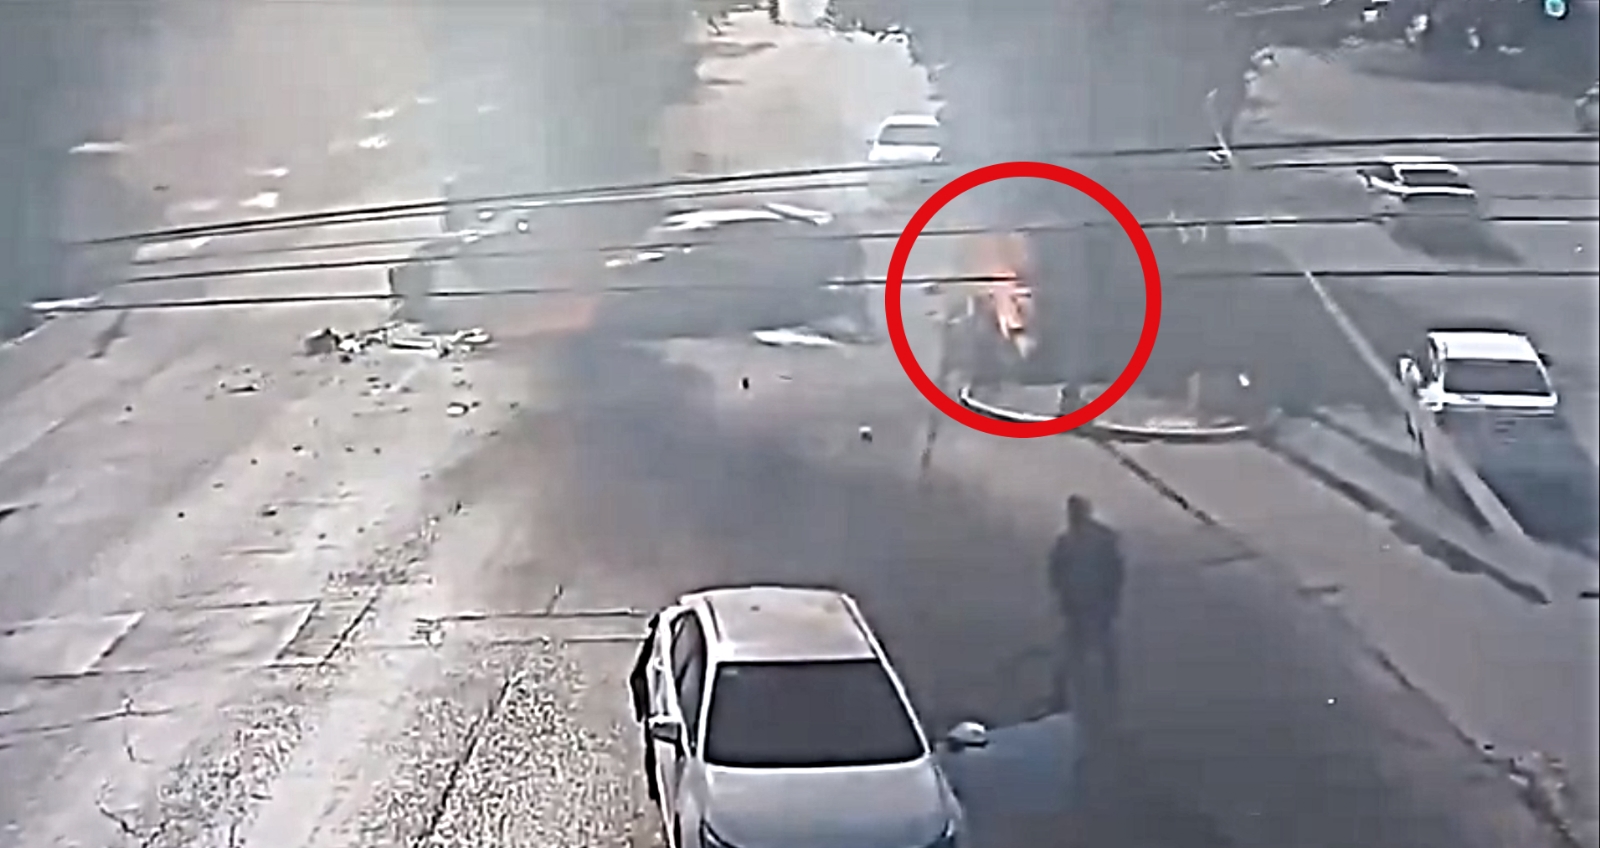 Hombre corre envuelto en llamas tras un choque en Nuevo León: VIDEO